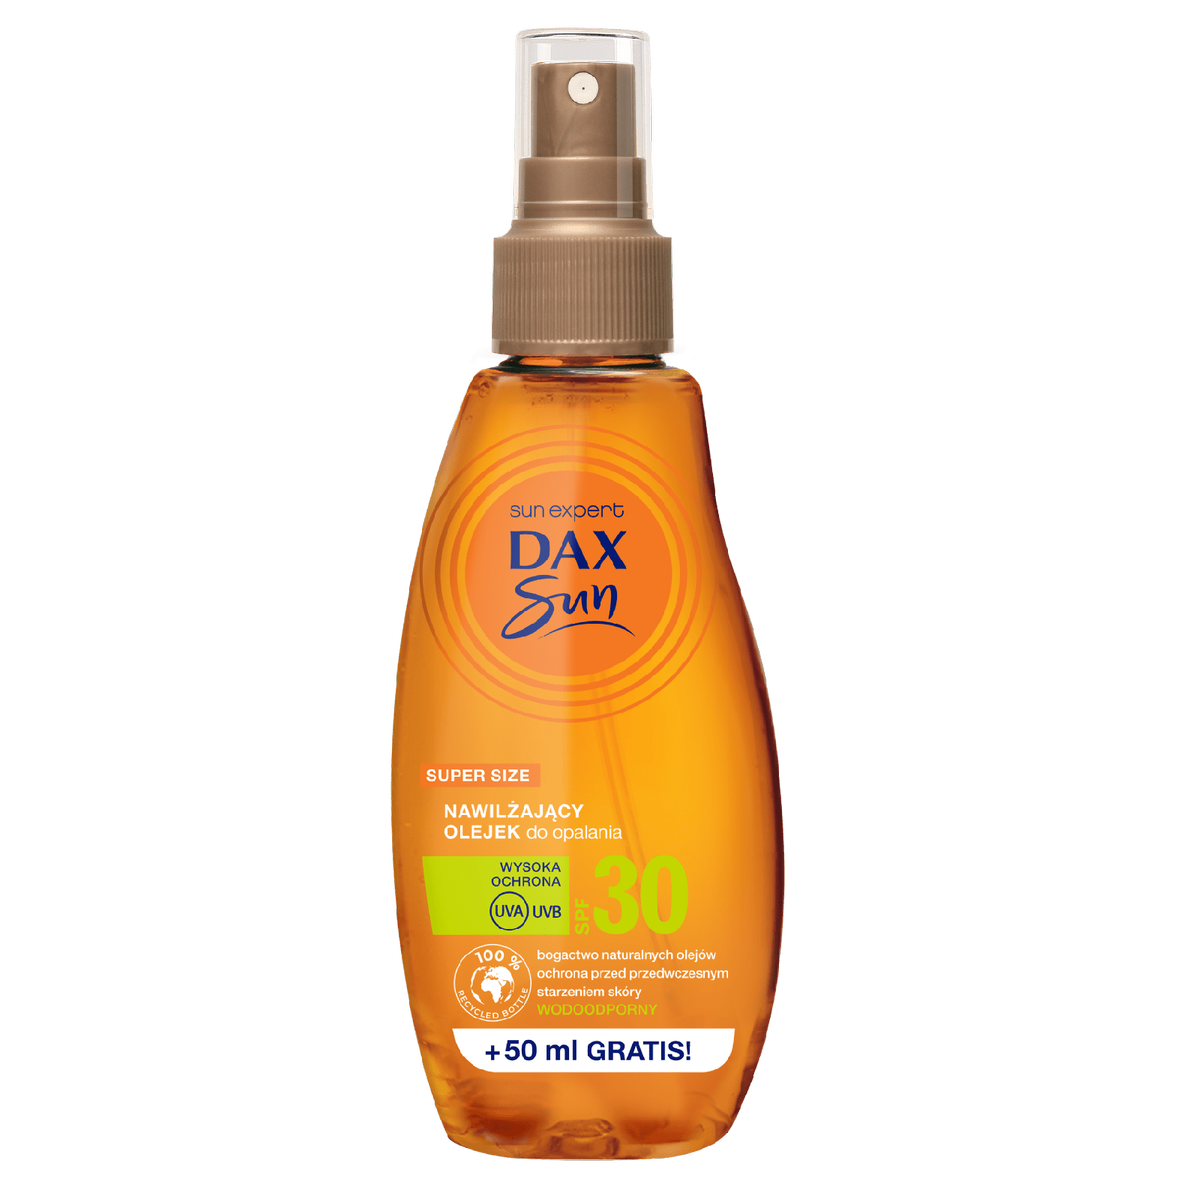 Dax Sun Nawilżający olejek do opalania SPF 30